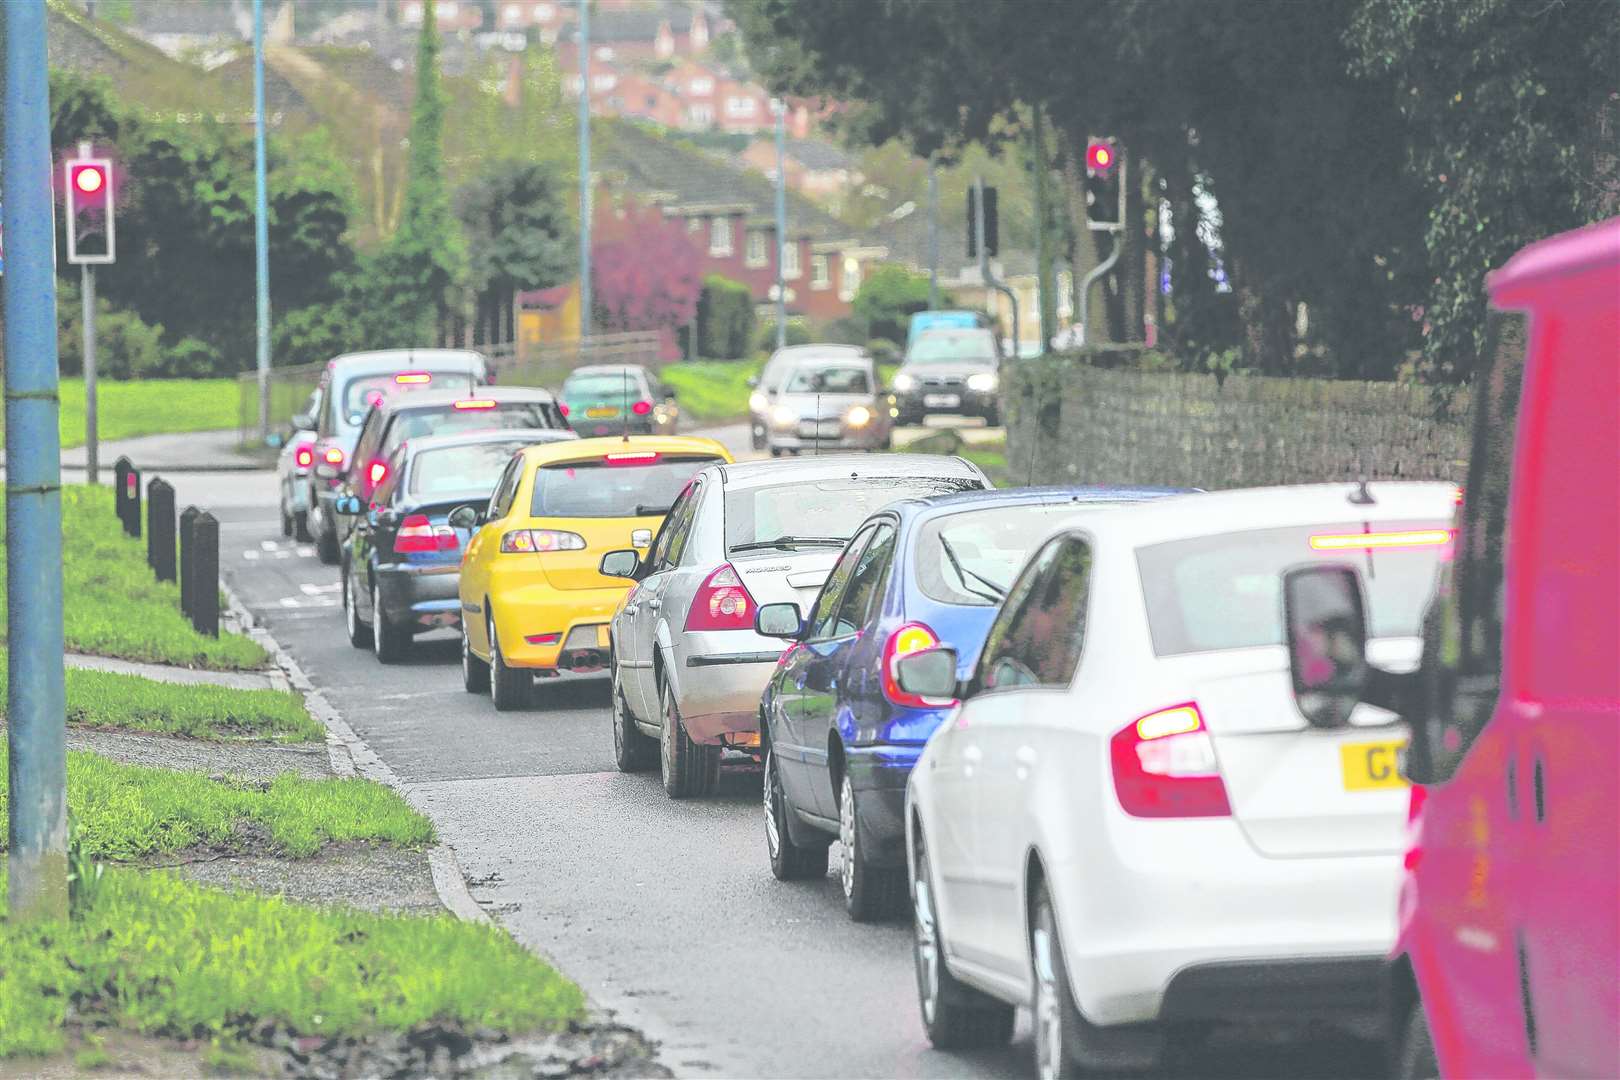 Traffic on Willington Street, Maidstone. Picture: Matthew Walker